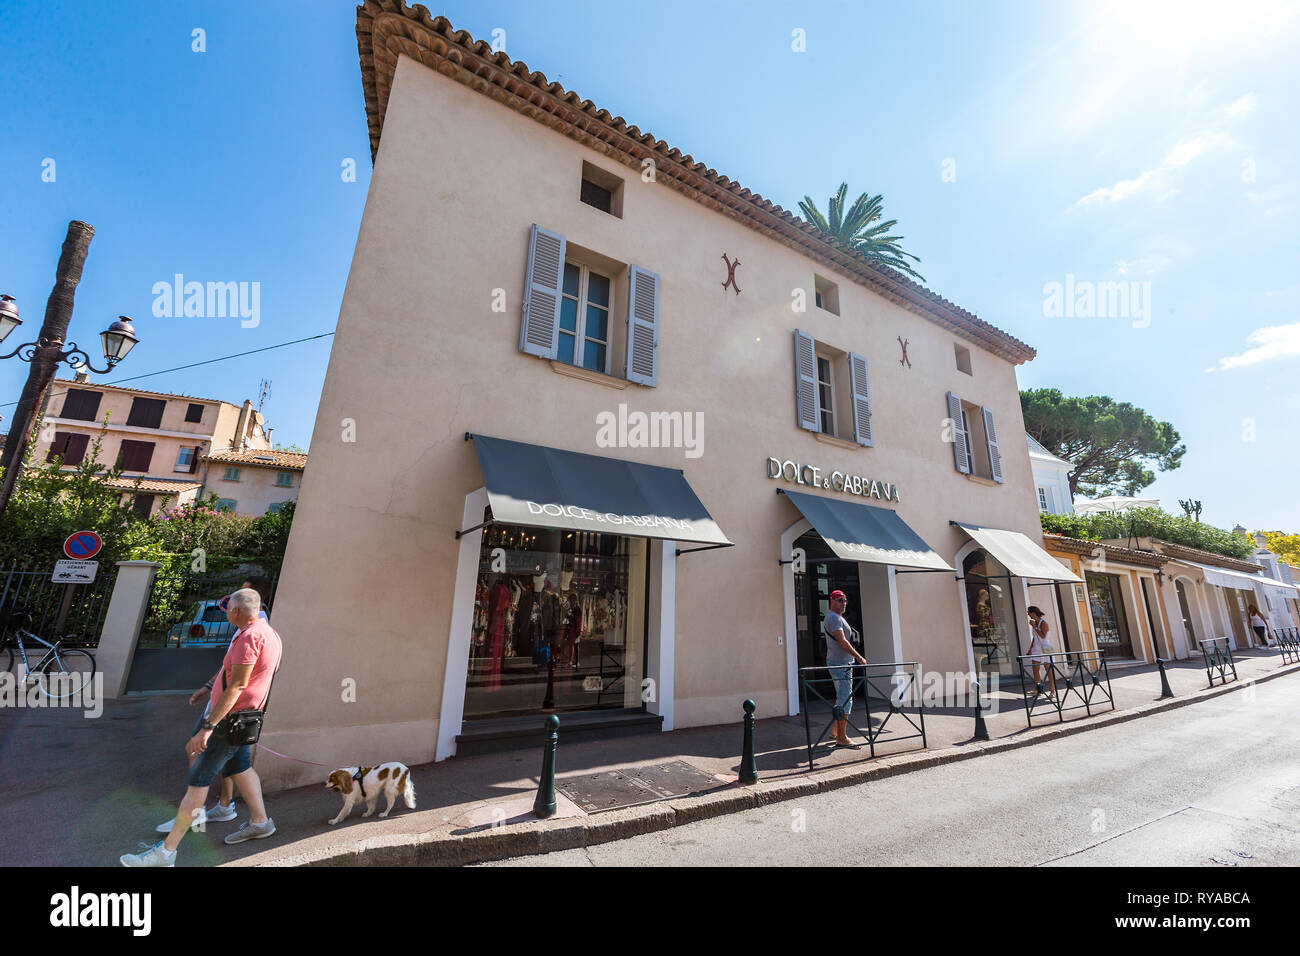 Filiale von Dolce & Gabbana in Saint Tropez, Frankreich, 01.09.2018 Bildnachweis: Mario Hommes / HH-Photography Stock Photo